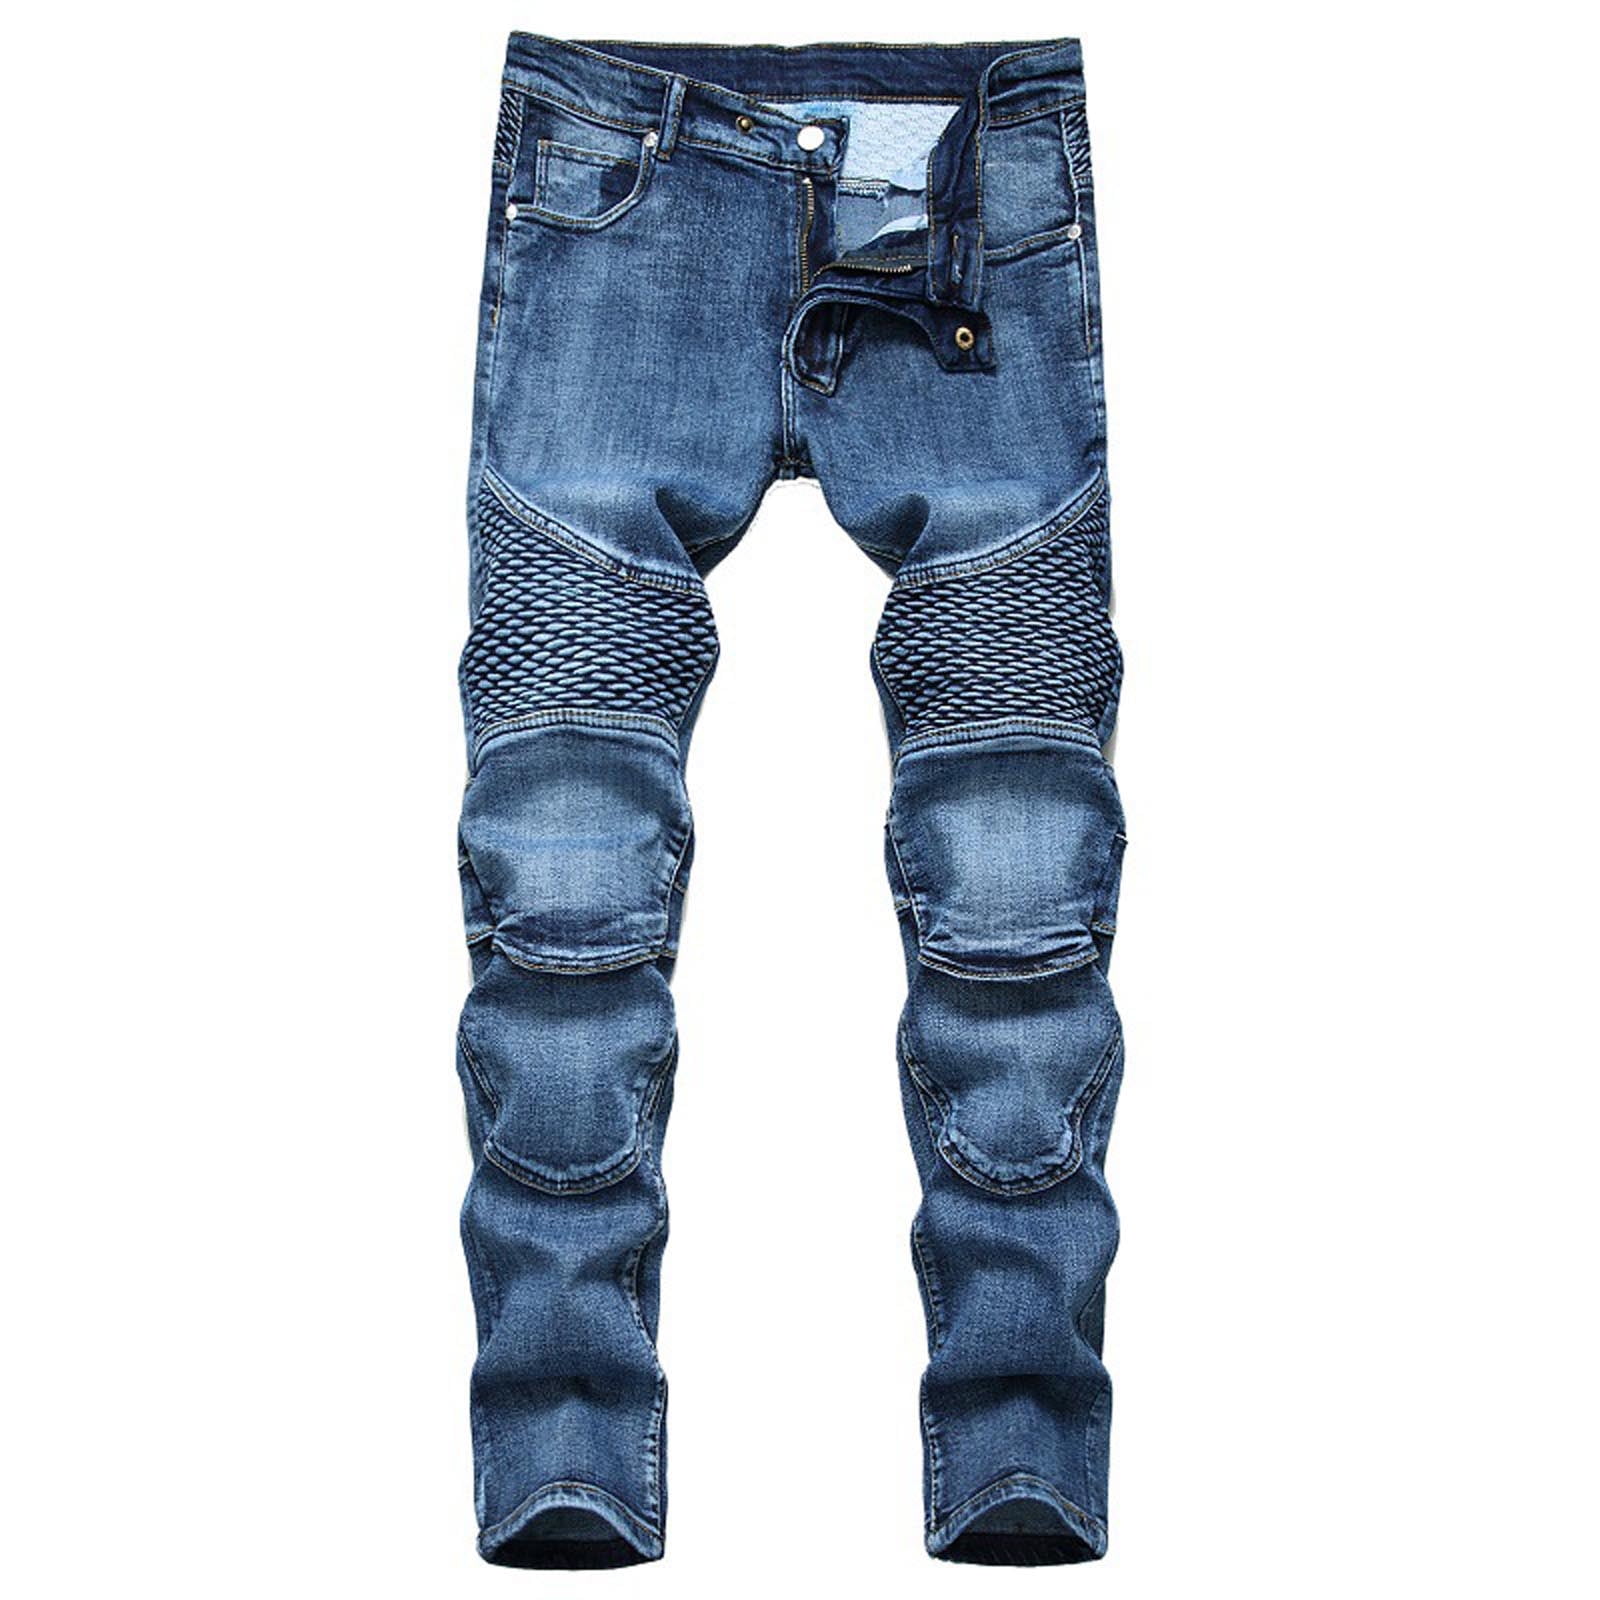 New Stylish Denim Jeans Pant For Men-thephaco.com.vn